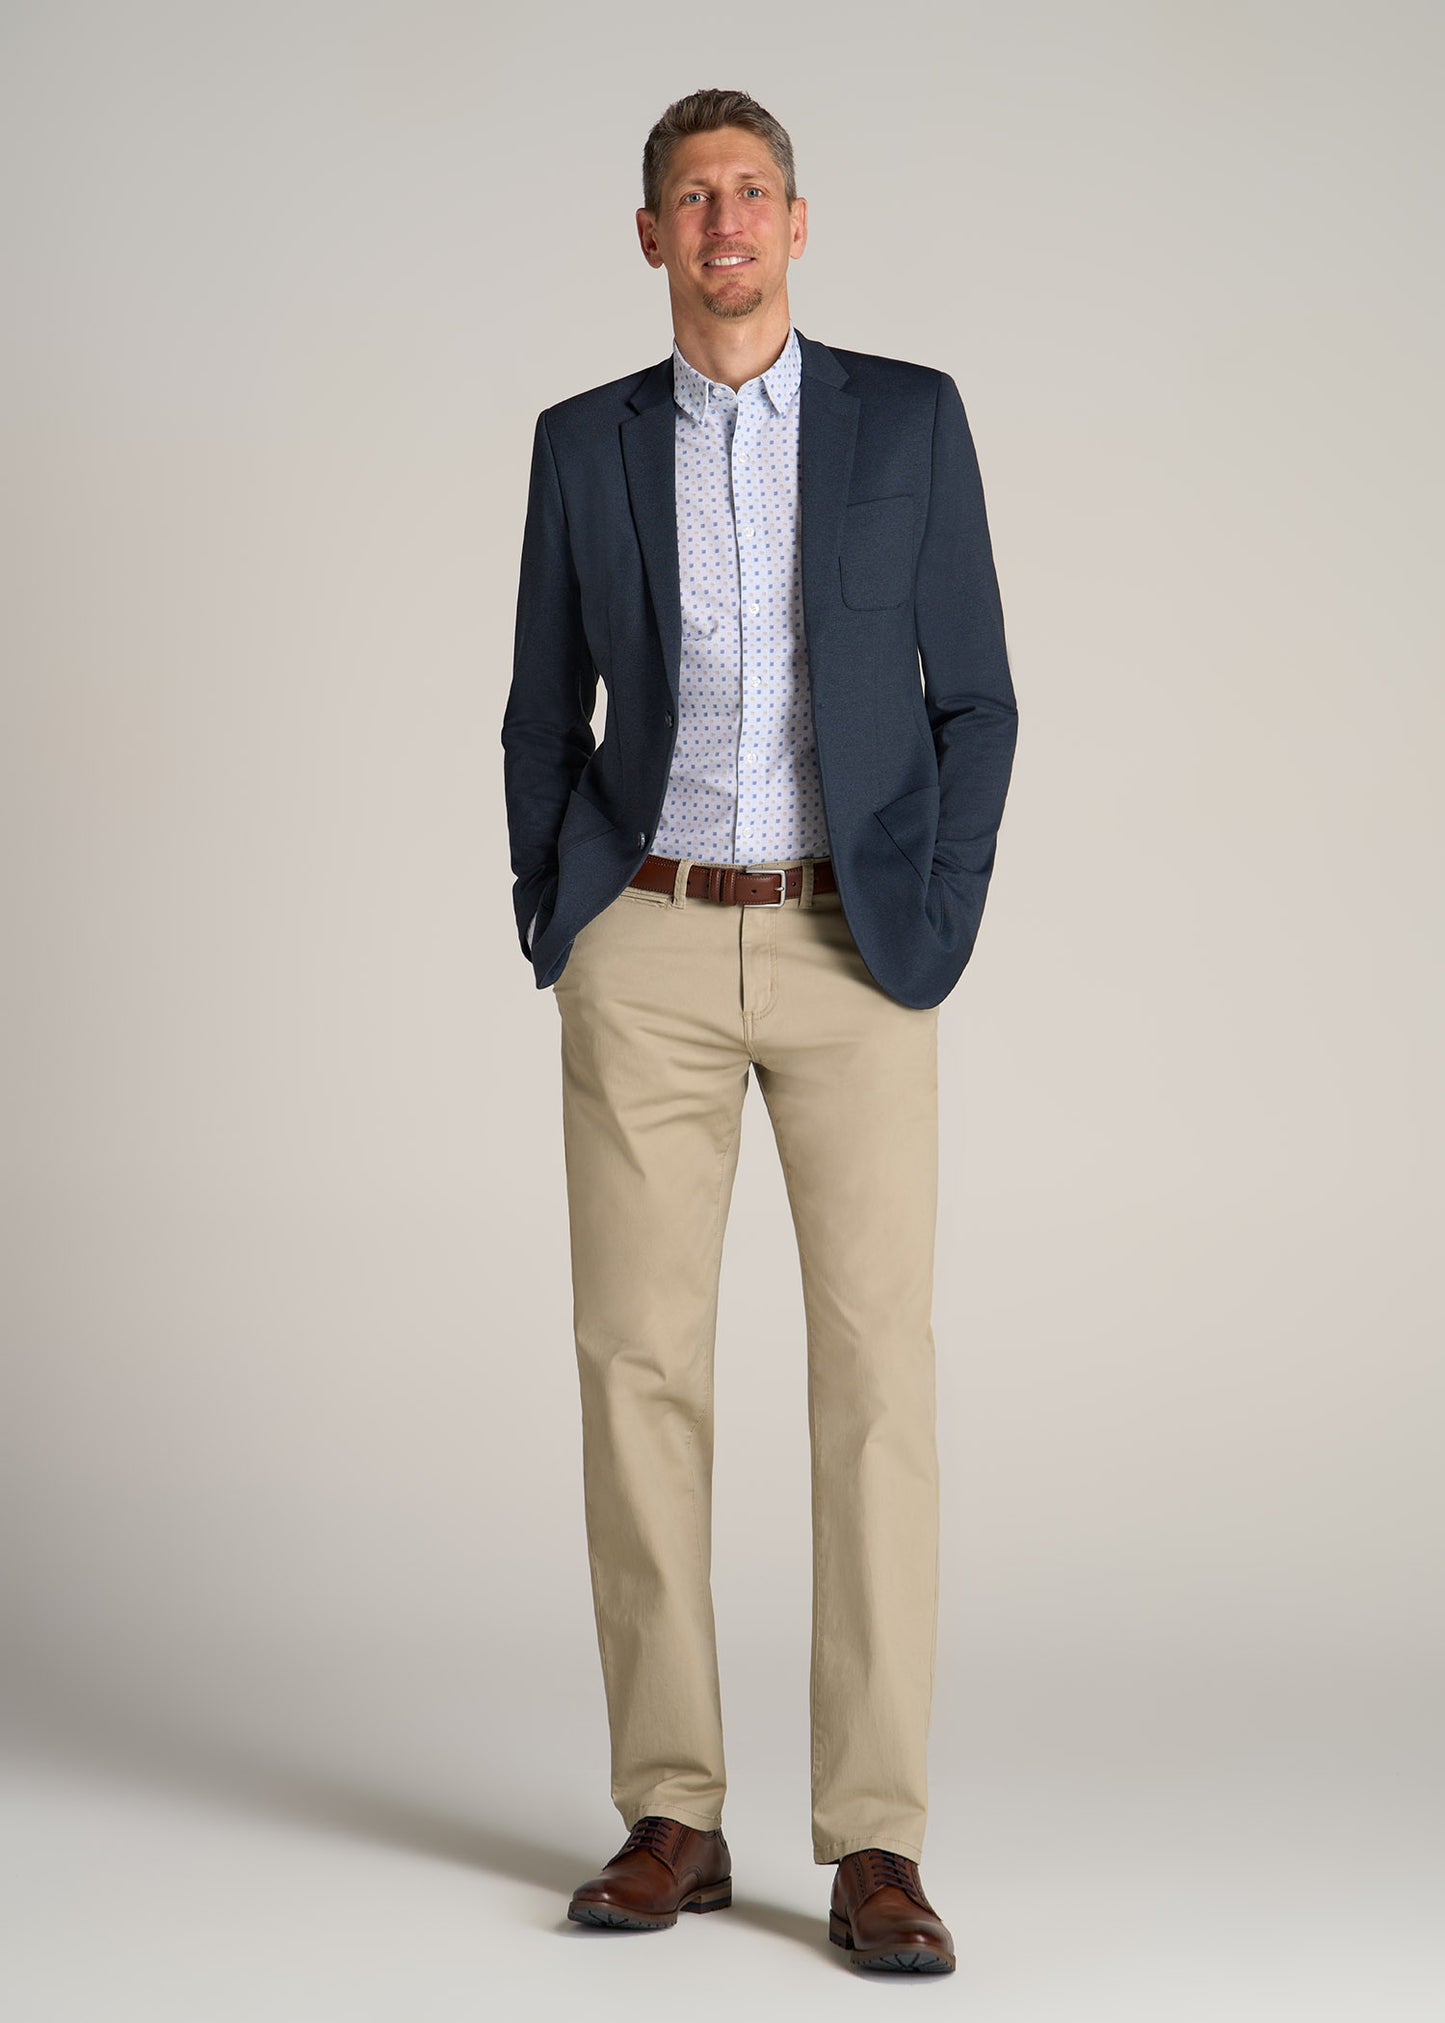 Men's Suits and Suit Separates | Dillard's